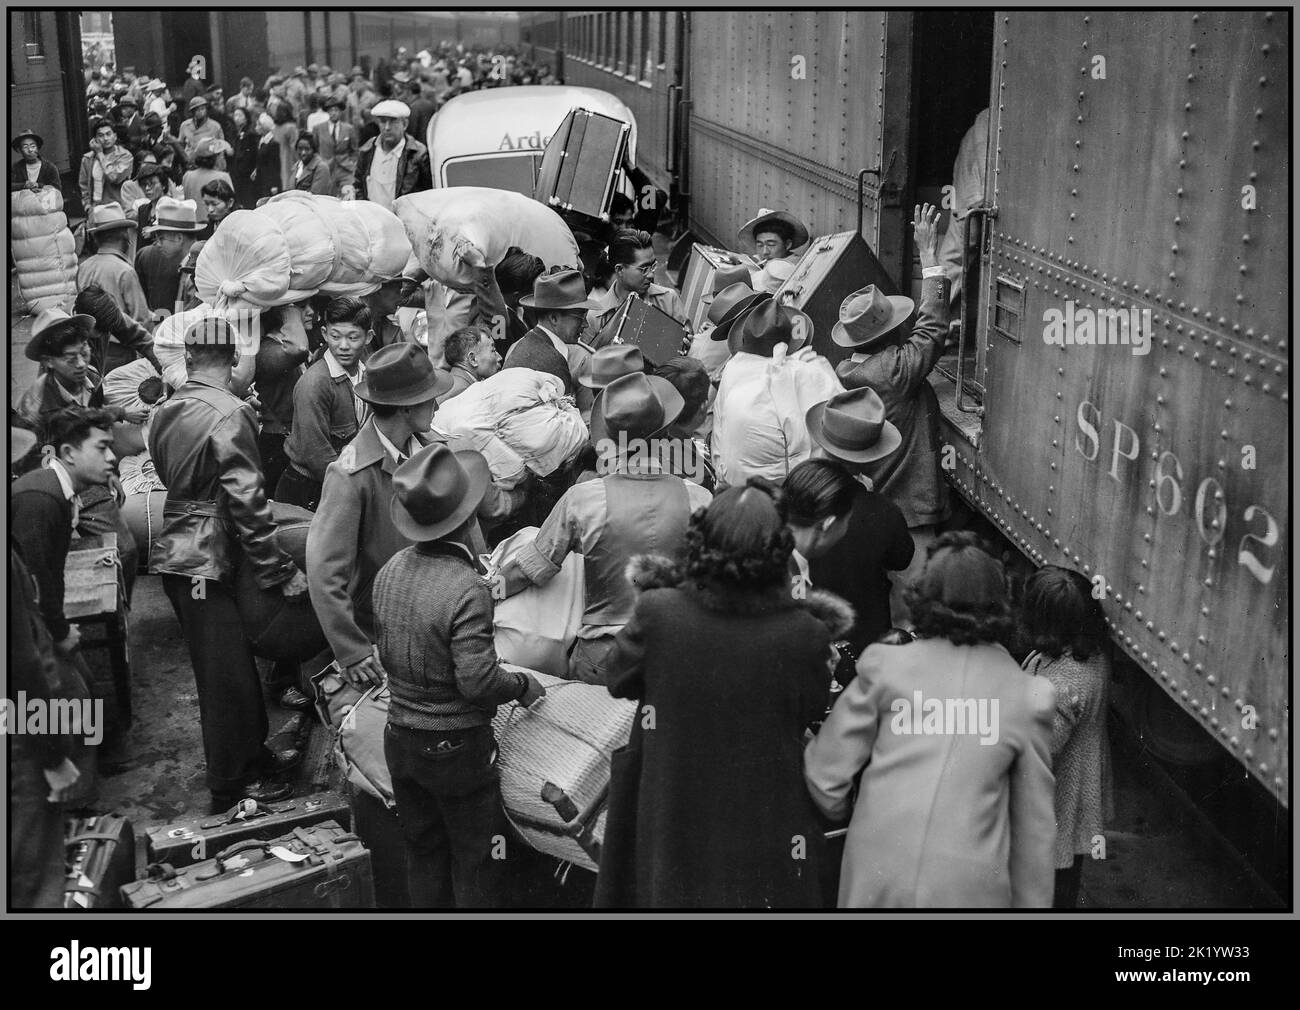 WW2 residentes japoneses en los EE.UU. Fueron reubicados durante WW2 Los Ángeles, California. Evacuados de ascendencia japonesa embarcan en un tren para Manzanar, California, a 250 millas de distancia, donde ahora serán alojados en un centro de la Autoridad de Reubicación de Guerra. Fecha entre 1942 y 1945 Foto de stock